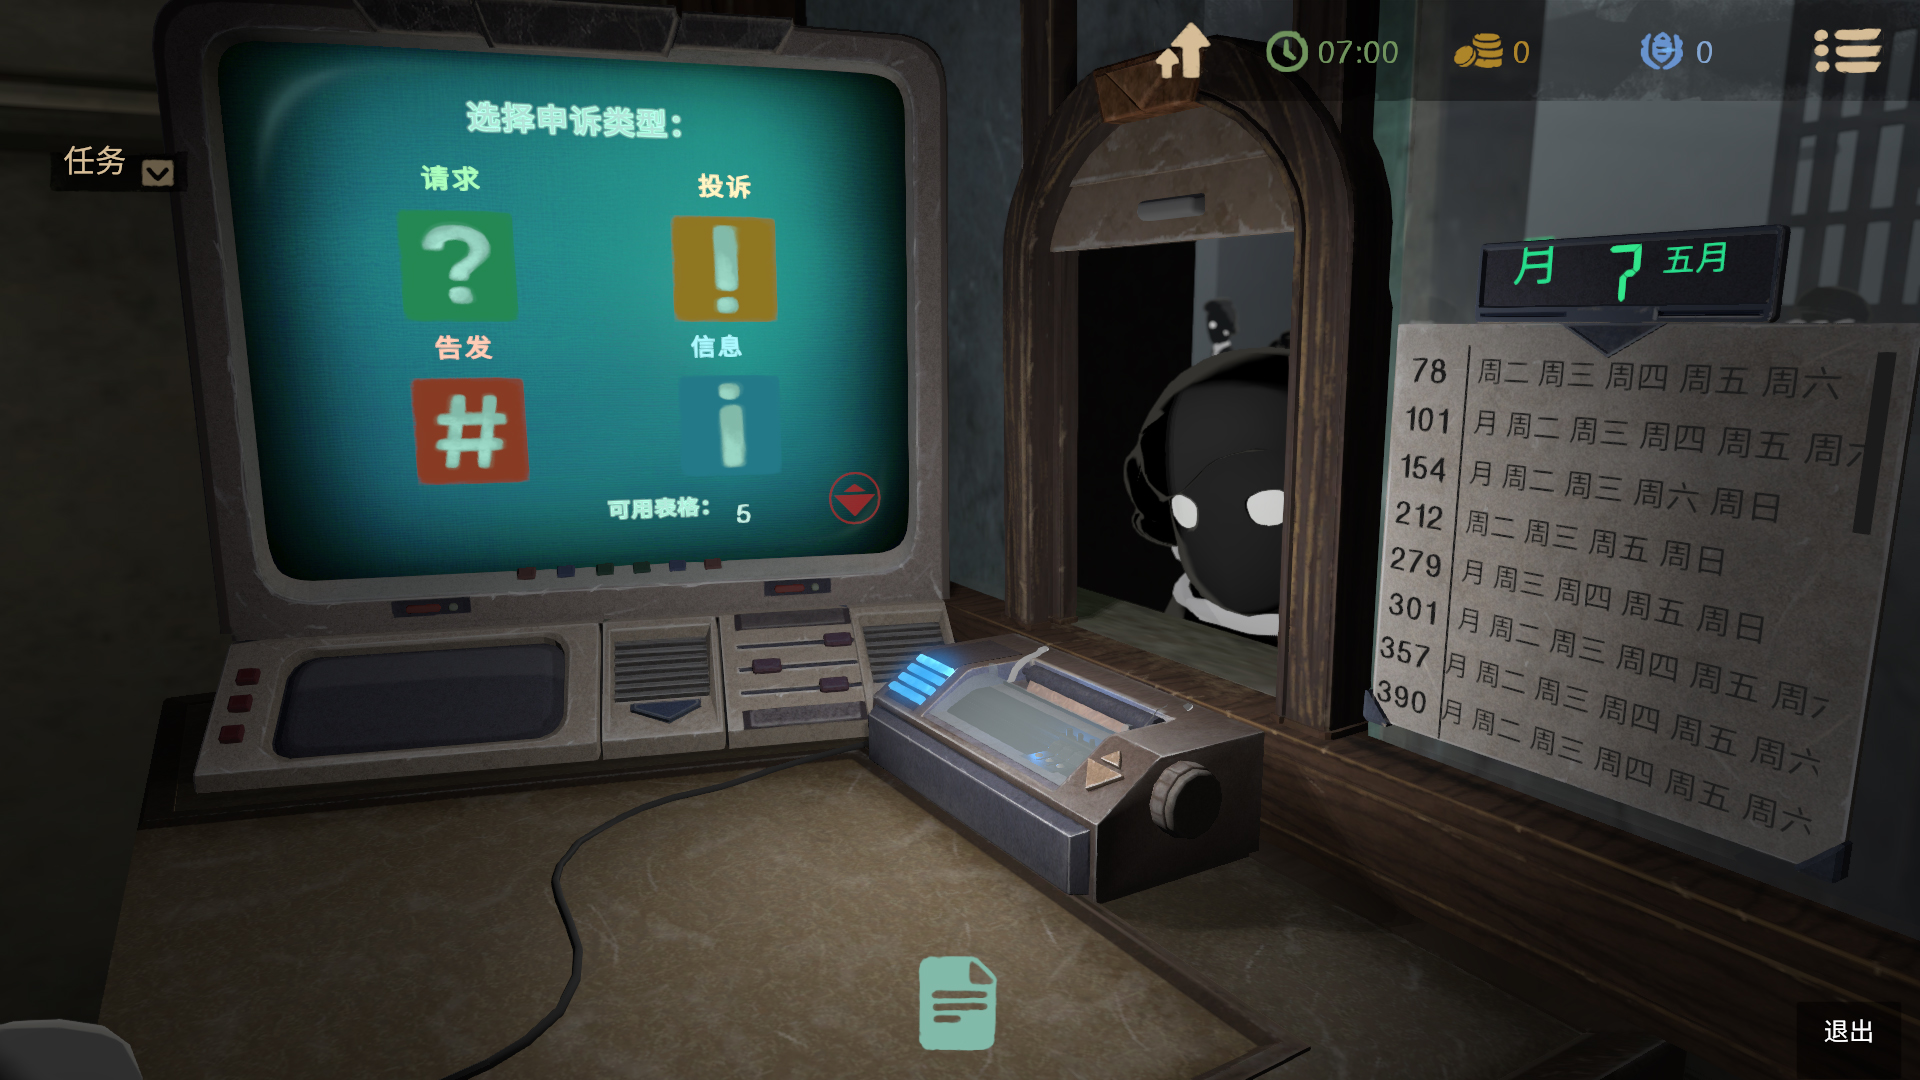 《旁观者2》将于12月4日发售 支持简中字幕及语音